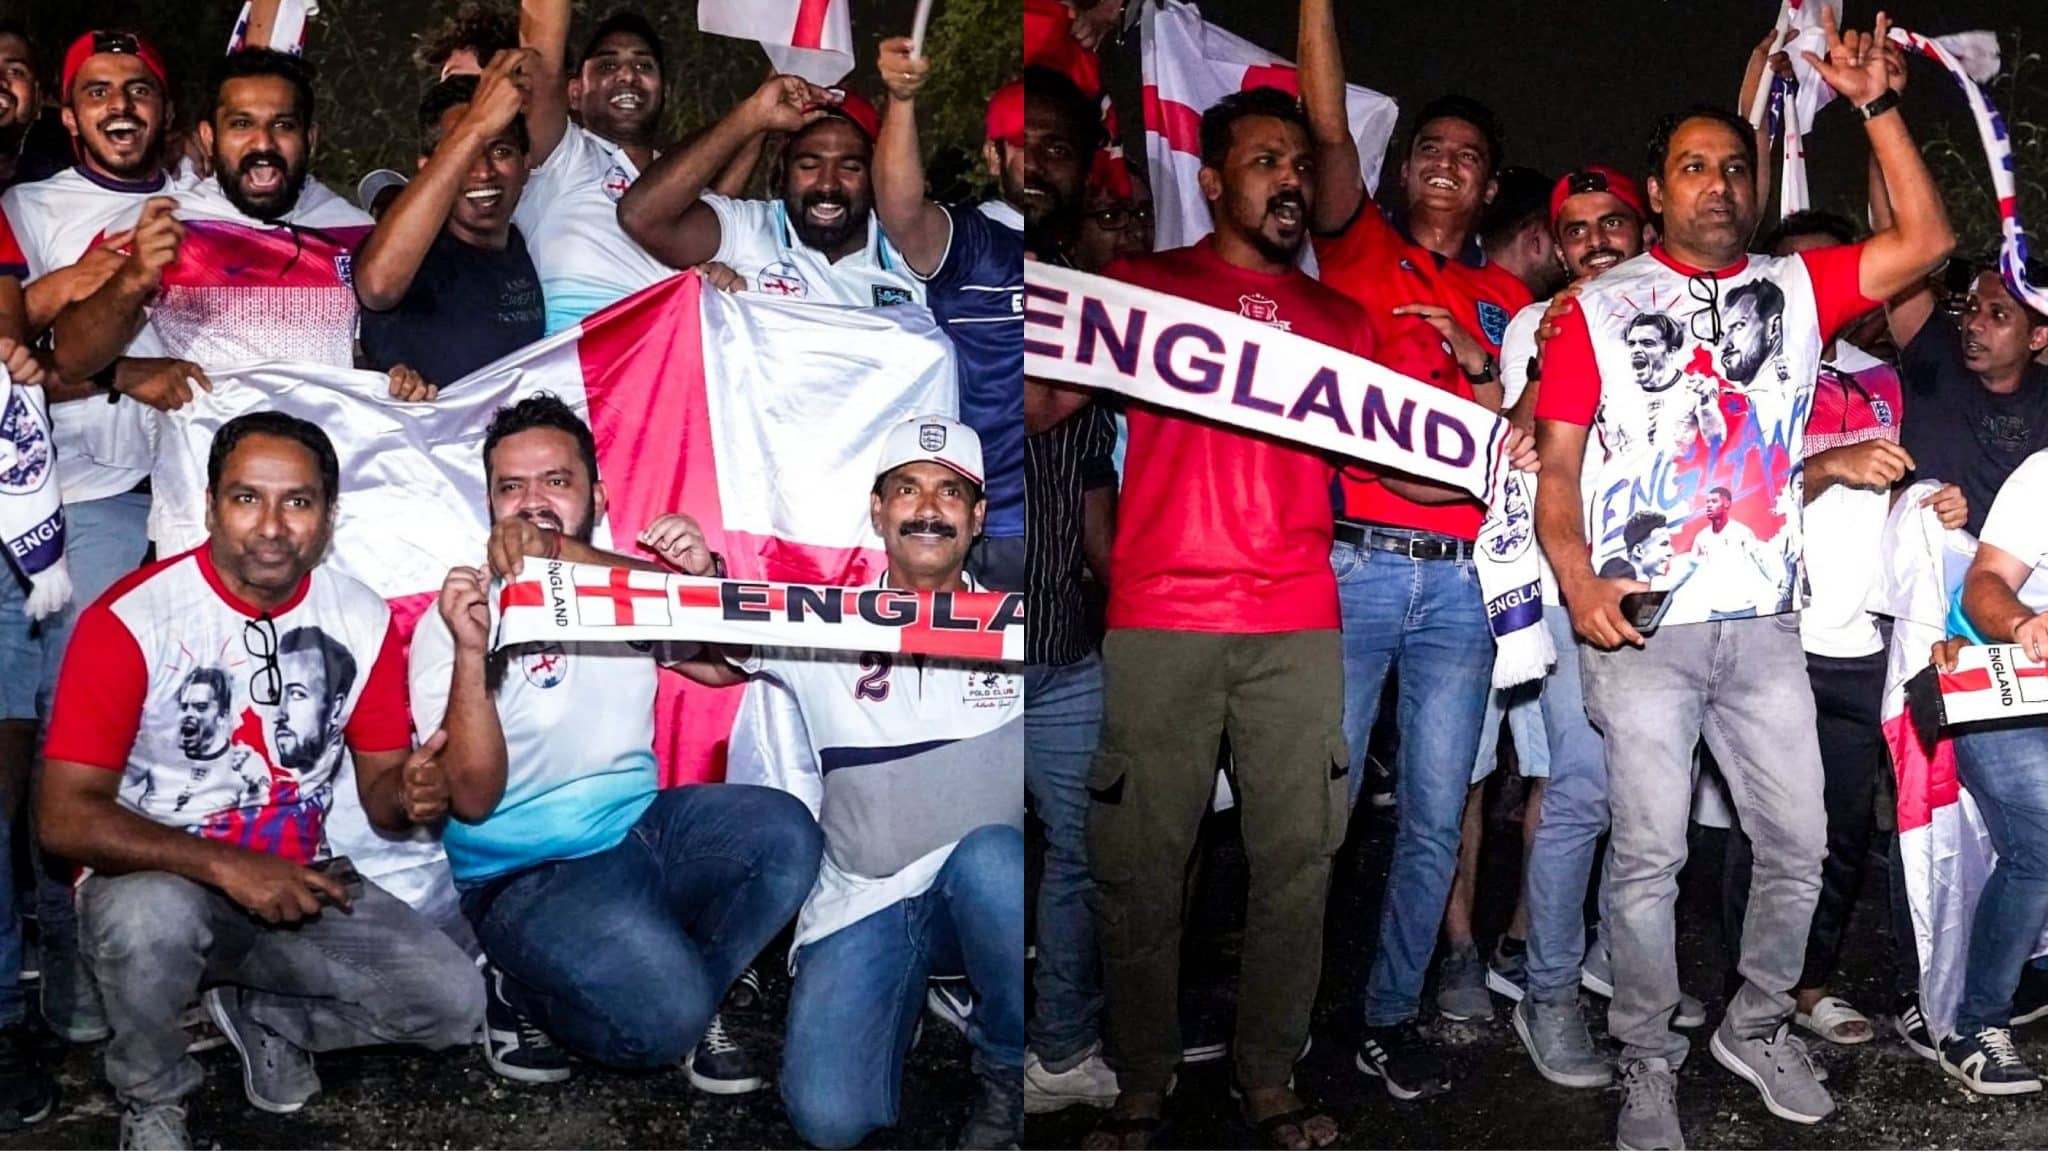 Déluge de supporters britanniques à la Coupe du monde, mais ce sont des Indiens payés par le Qatar pour que l&rsquo;événement ait l&rsquo;air bondé